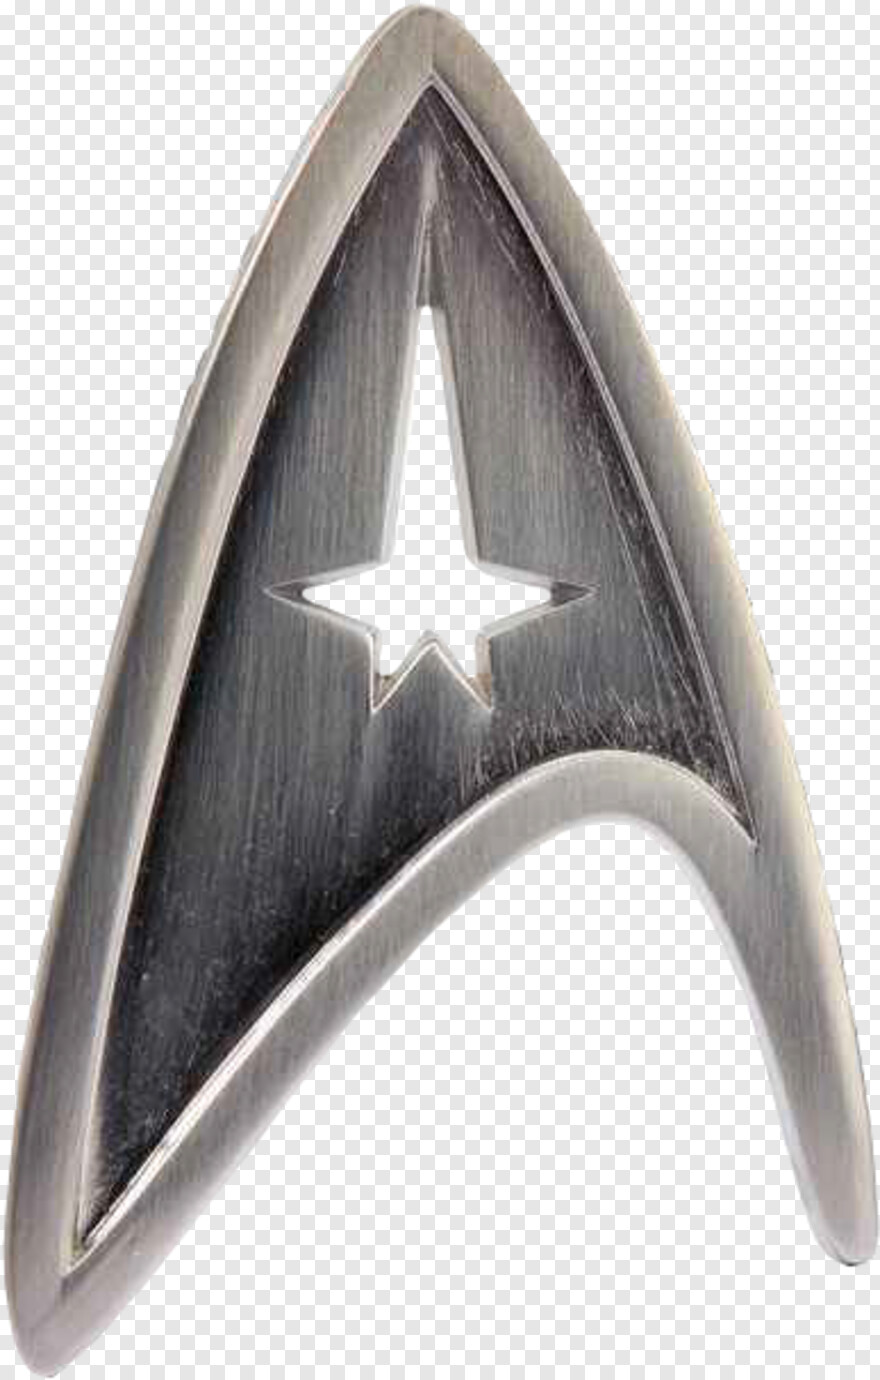 star-trek-logo # 425026